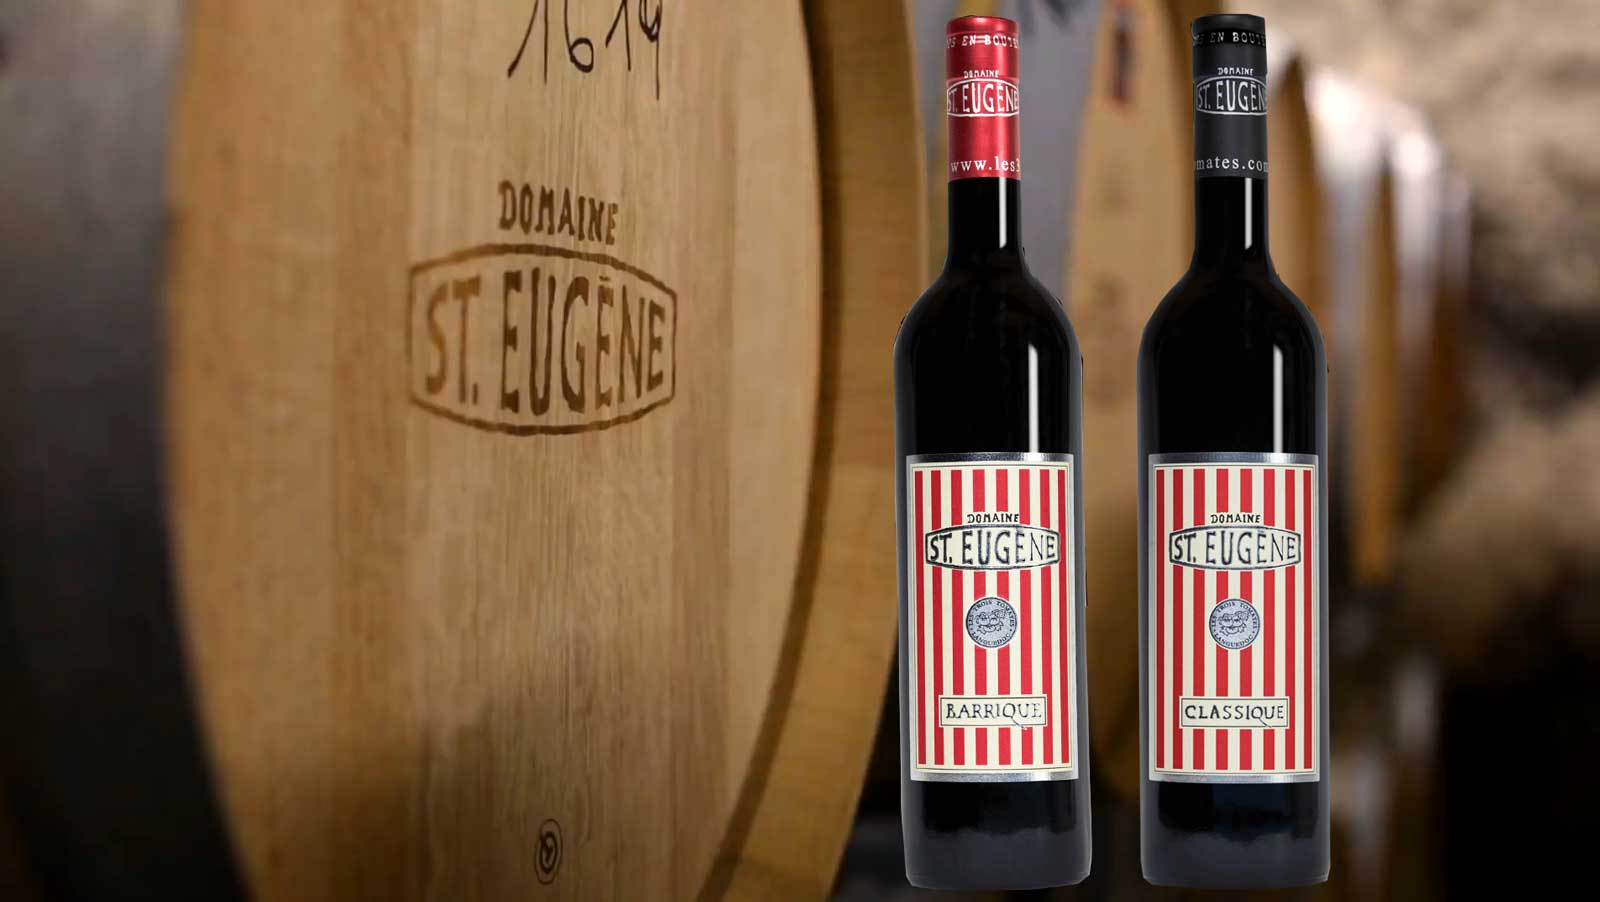 Wain Perancis - Languedoc-Roussillon - St. Eugene Domaine de St-Eugene kami ialah kilang wain yang bangkit semula dengan sejarah sejak lebih 2,000 tahun lalu. Ia terletak secara ideal dan tenang di tengah-tengah ladang anggur Languedoc-Roussillon di selatan Perancis. Jika anda mencari kelonggaran dan alam semulajadi, anda boleh menghabiskan percutian anda bersama kami dalam suasana peribadi.